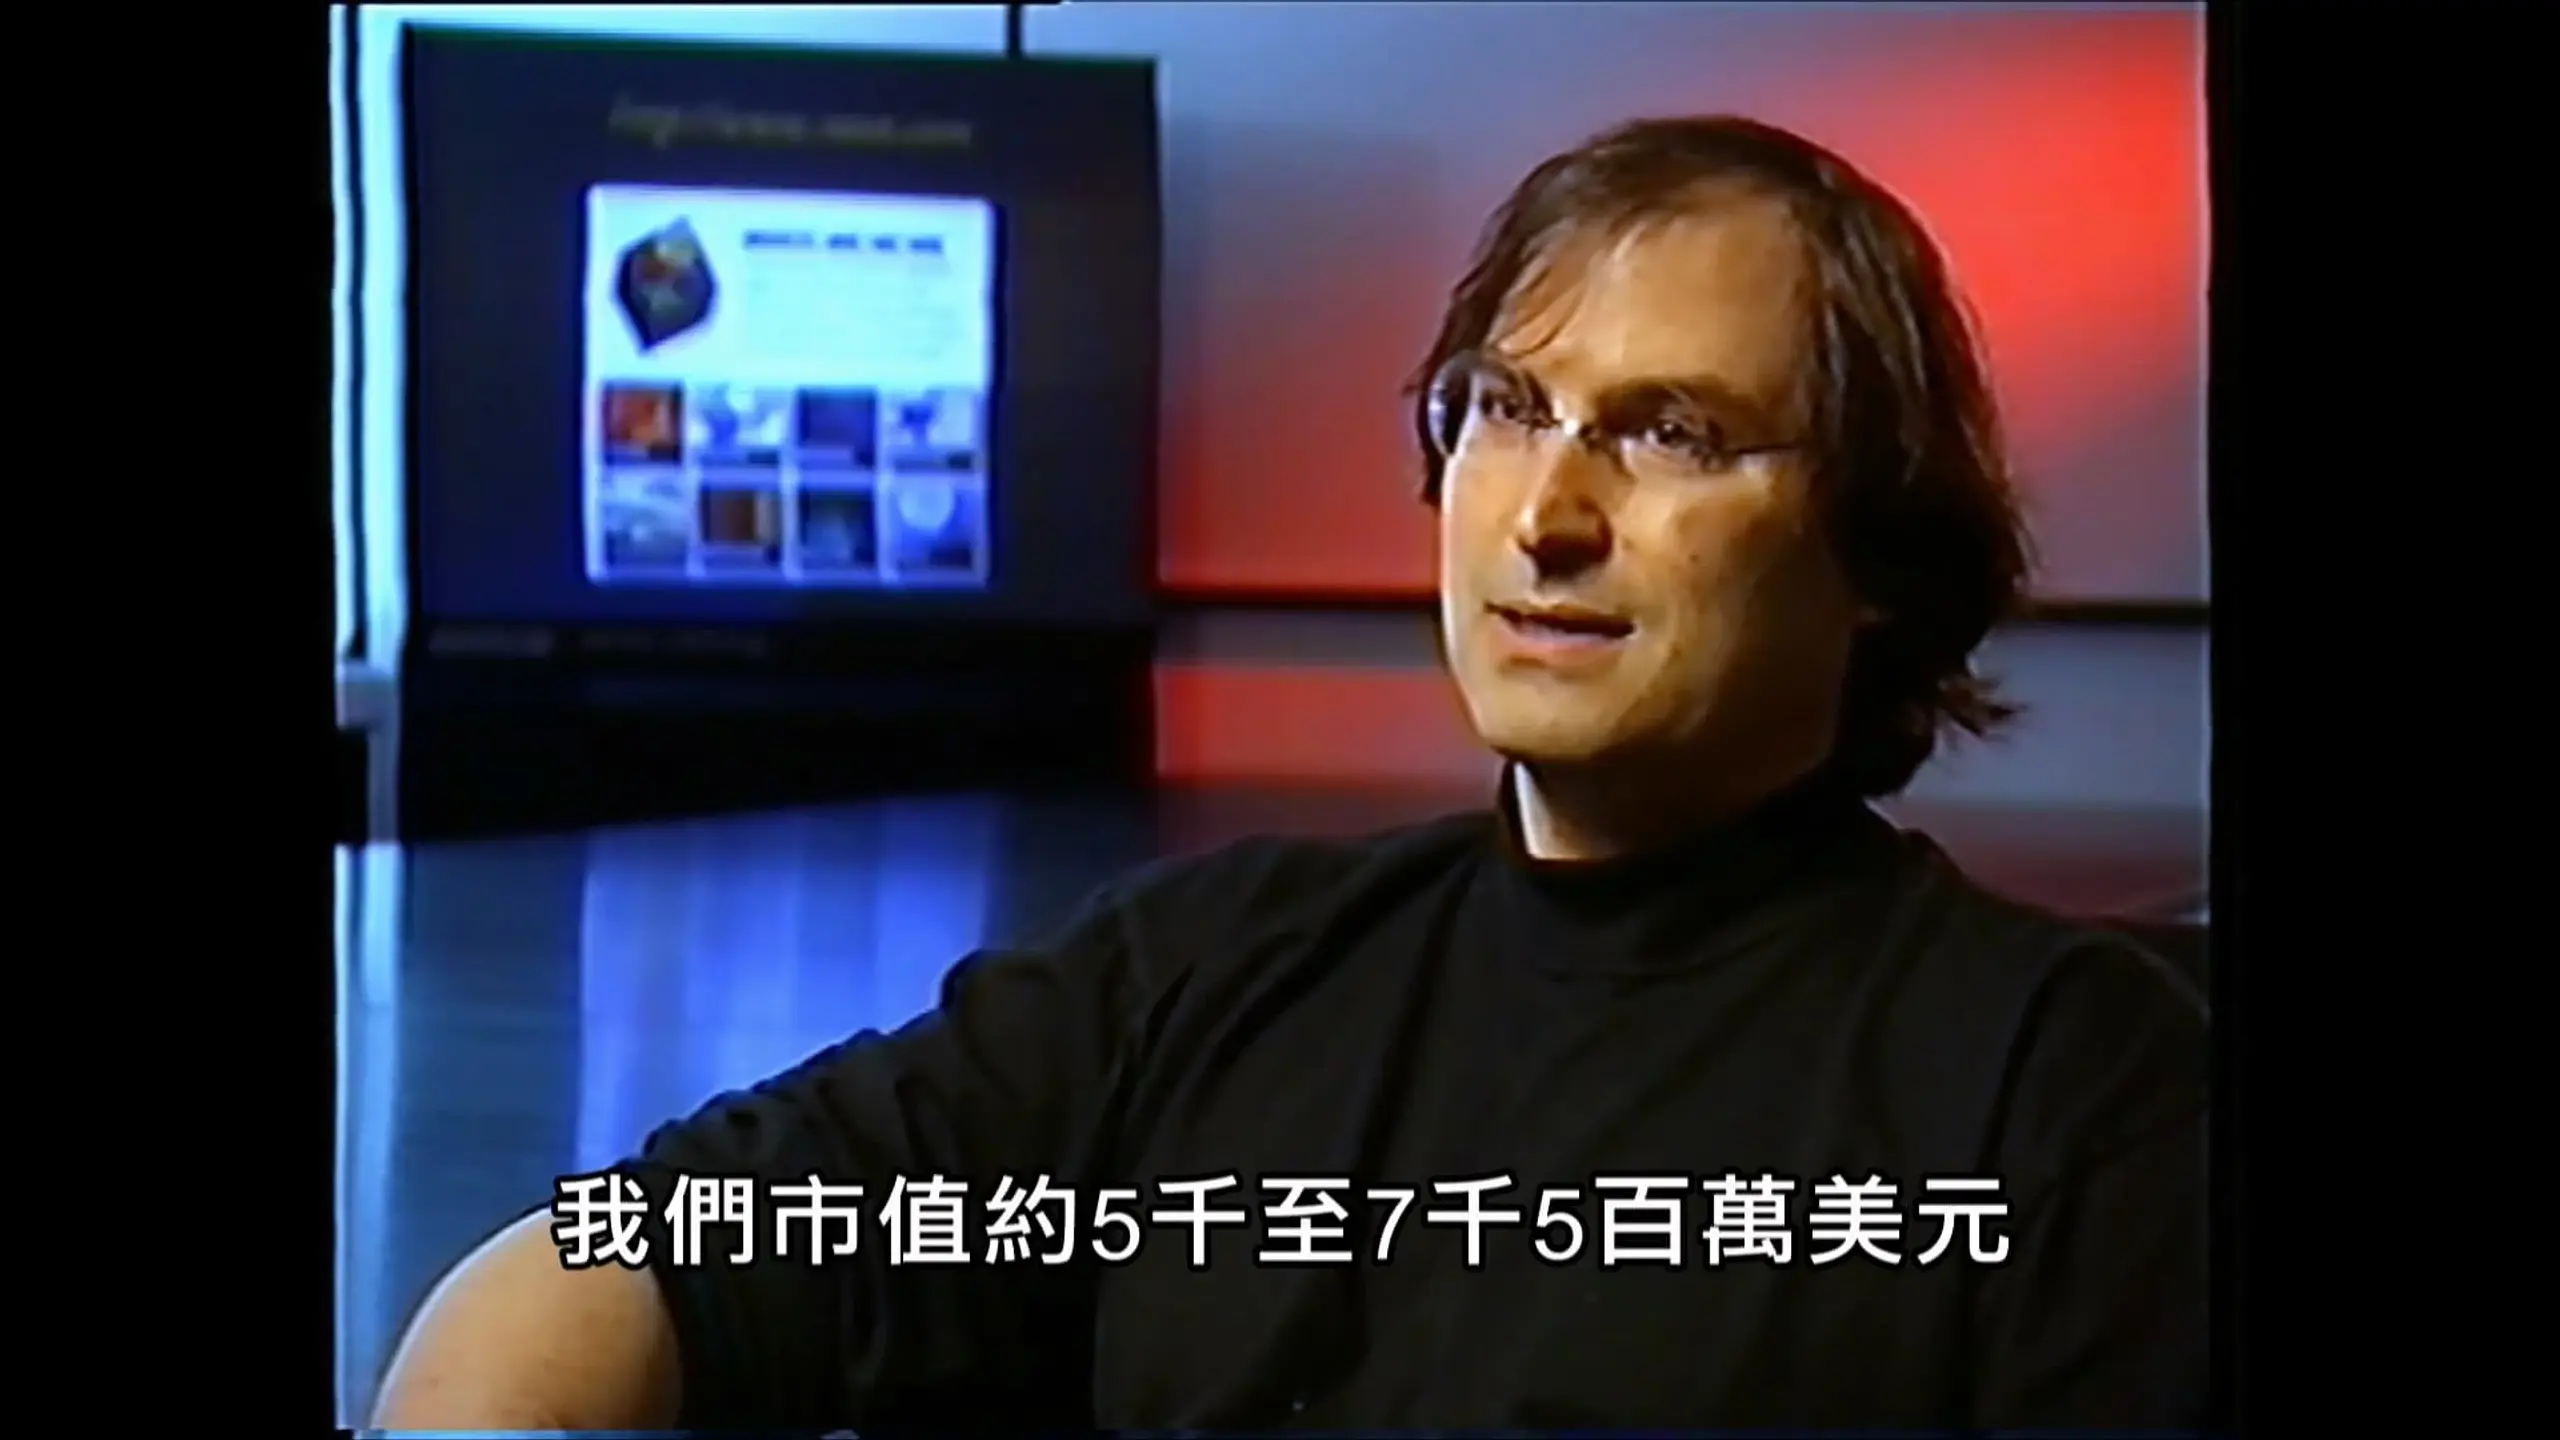 Steve Jobs - Das "Verlorene Interview"